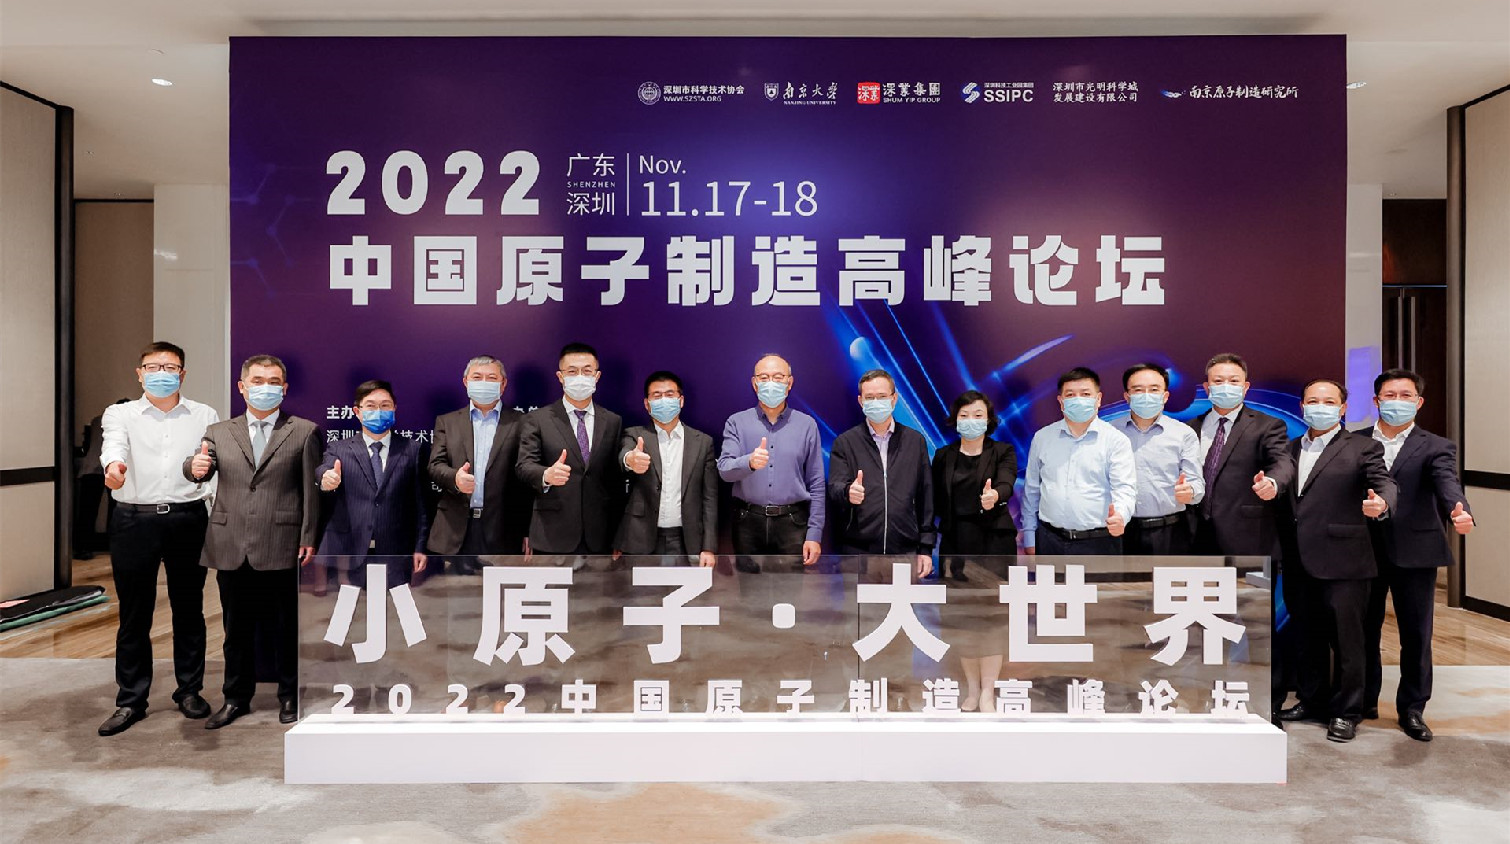 院士齊聚鵬城 布局未來產業 「2022中國原子製造高峰論壇」在高交會期間隆重開幕